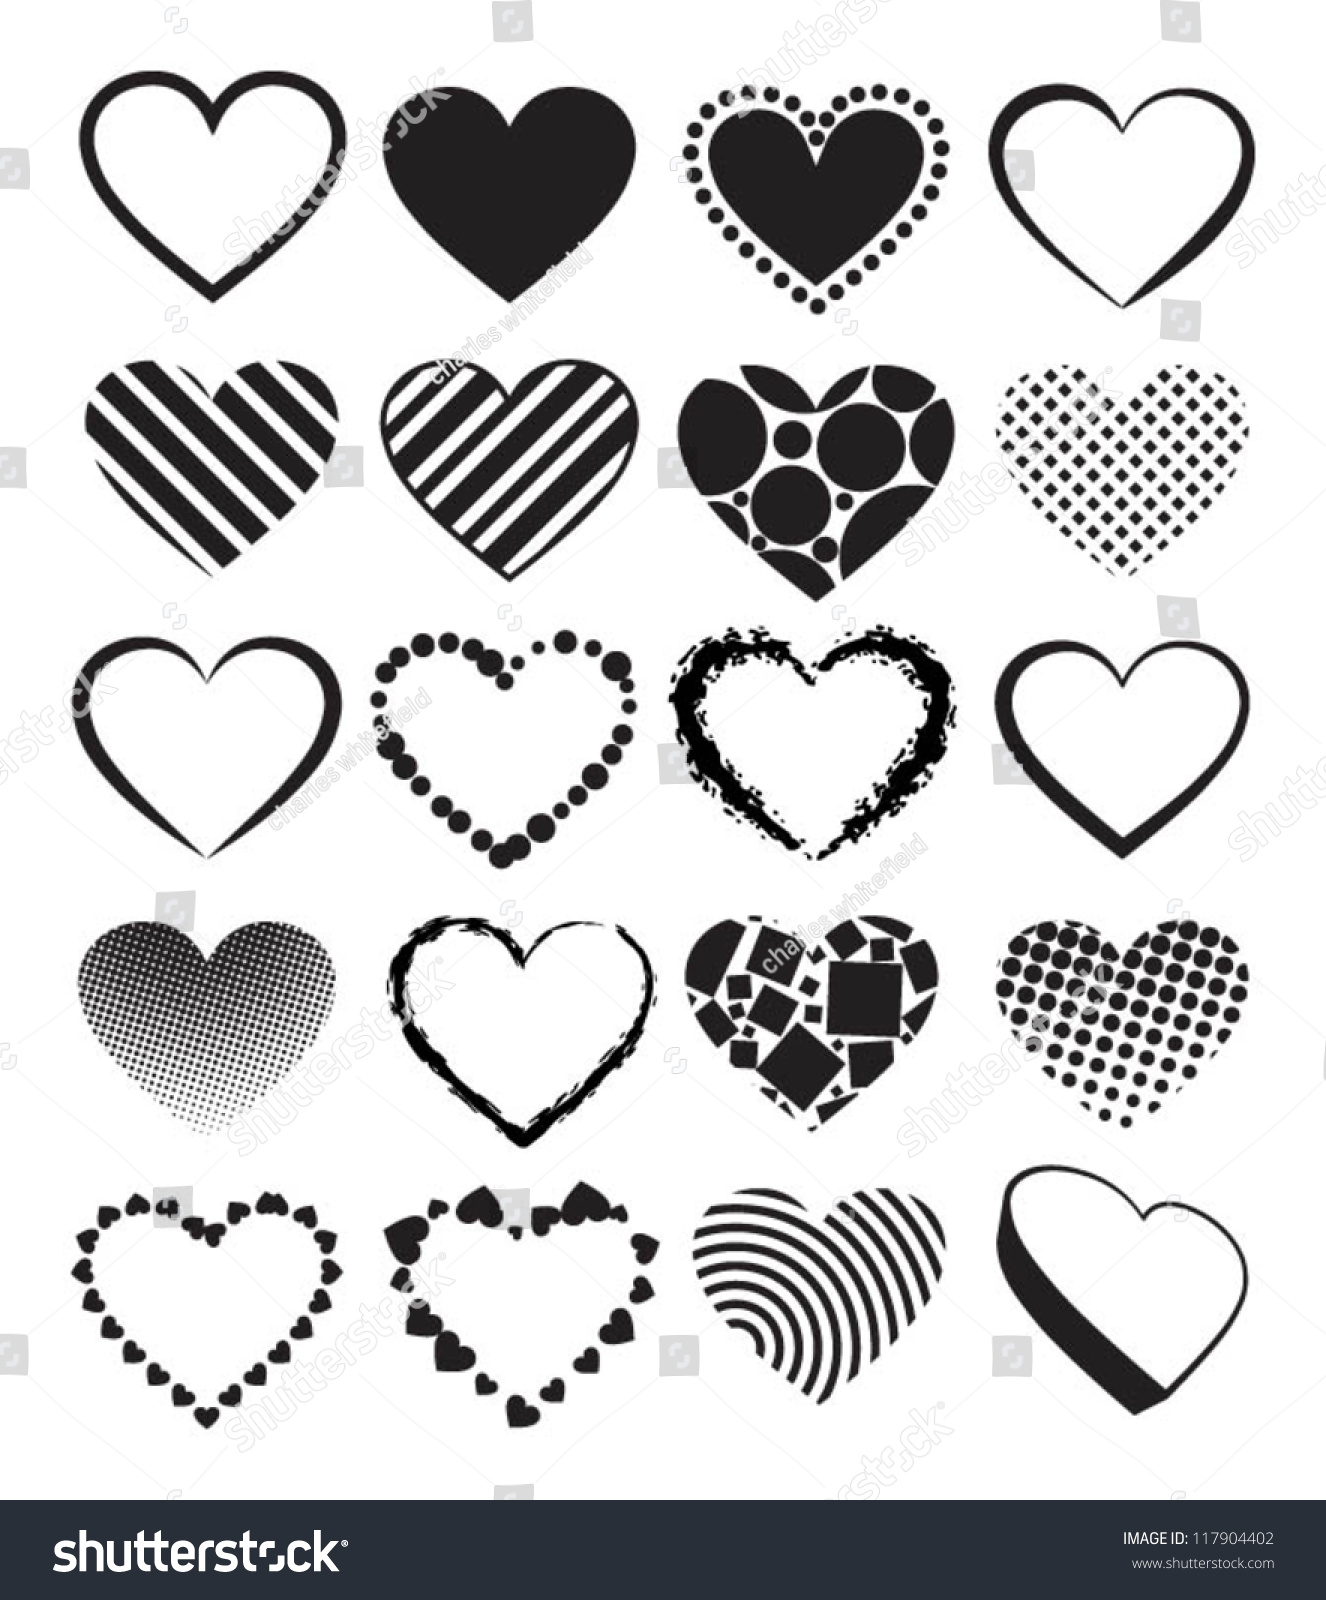 Hearts - Set Of Vector Illustrations. - 117904402 : Shutterstock